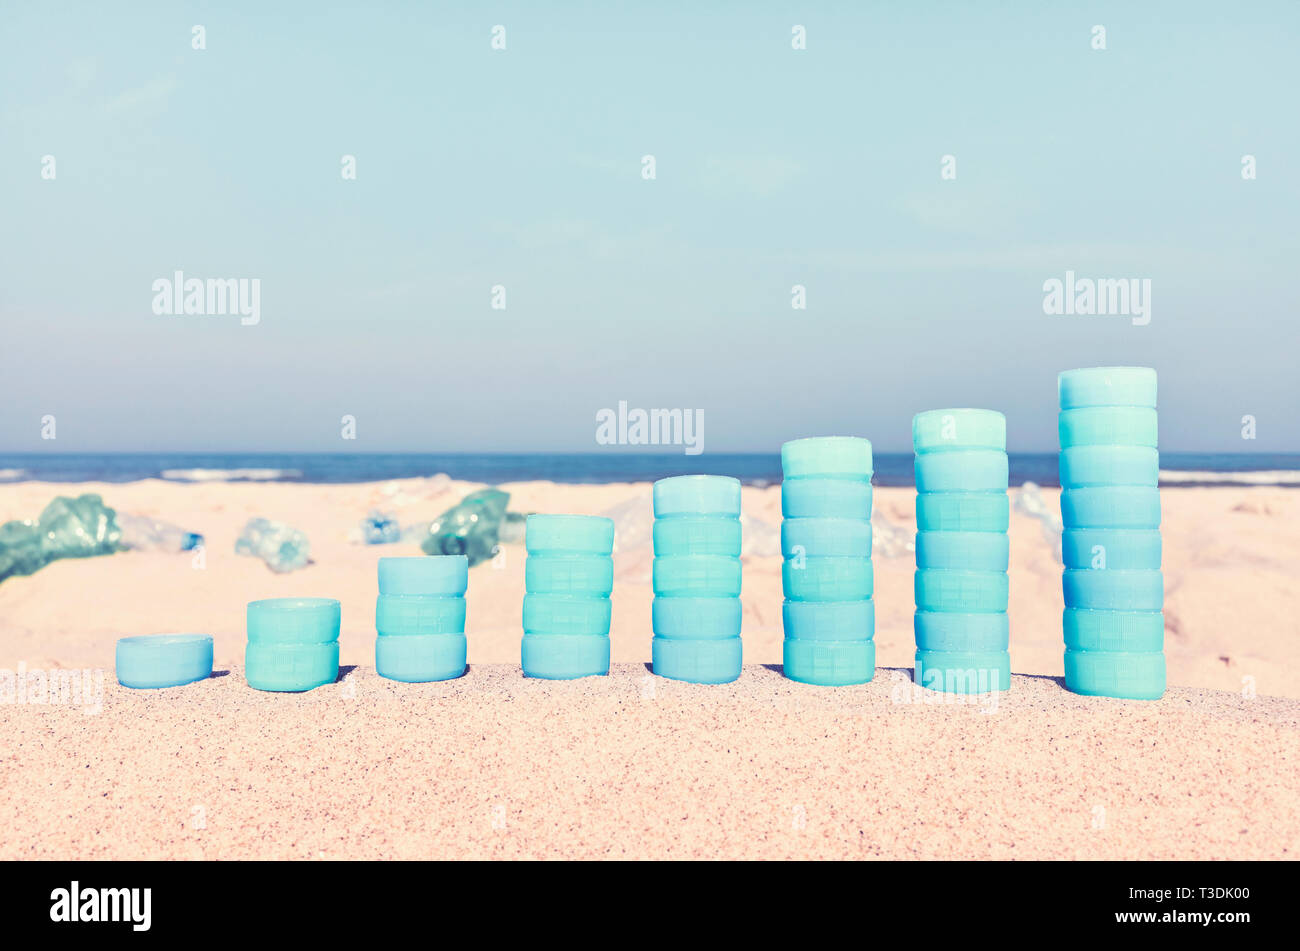 Diagramm der Plastikflaschen Caps auf Sand zeigt die Zunahme der Verwendung von Kunststoff, Farbe getonte Bild, selektive konzentrieren. Stockfoto